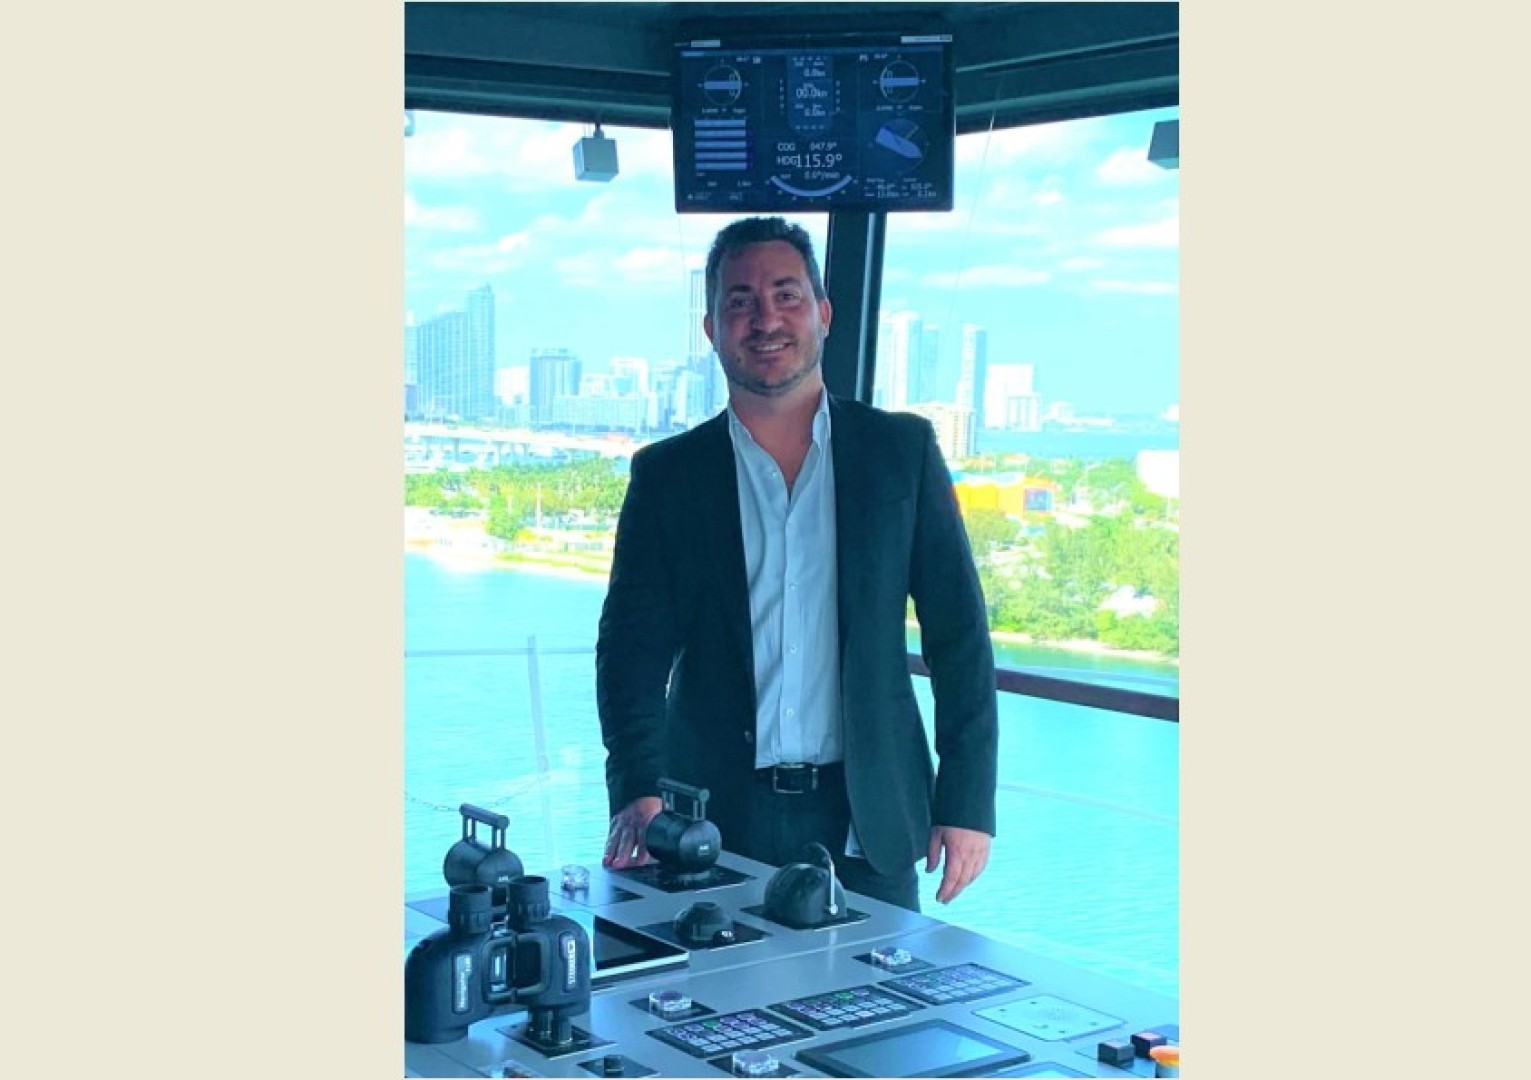 Michele Landro nuovo responsabile del settore navi passeggeri del Lloyd's Register a livello globale